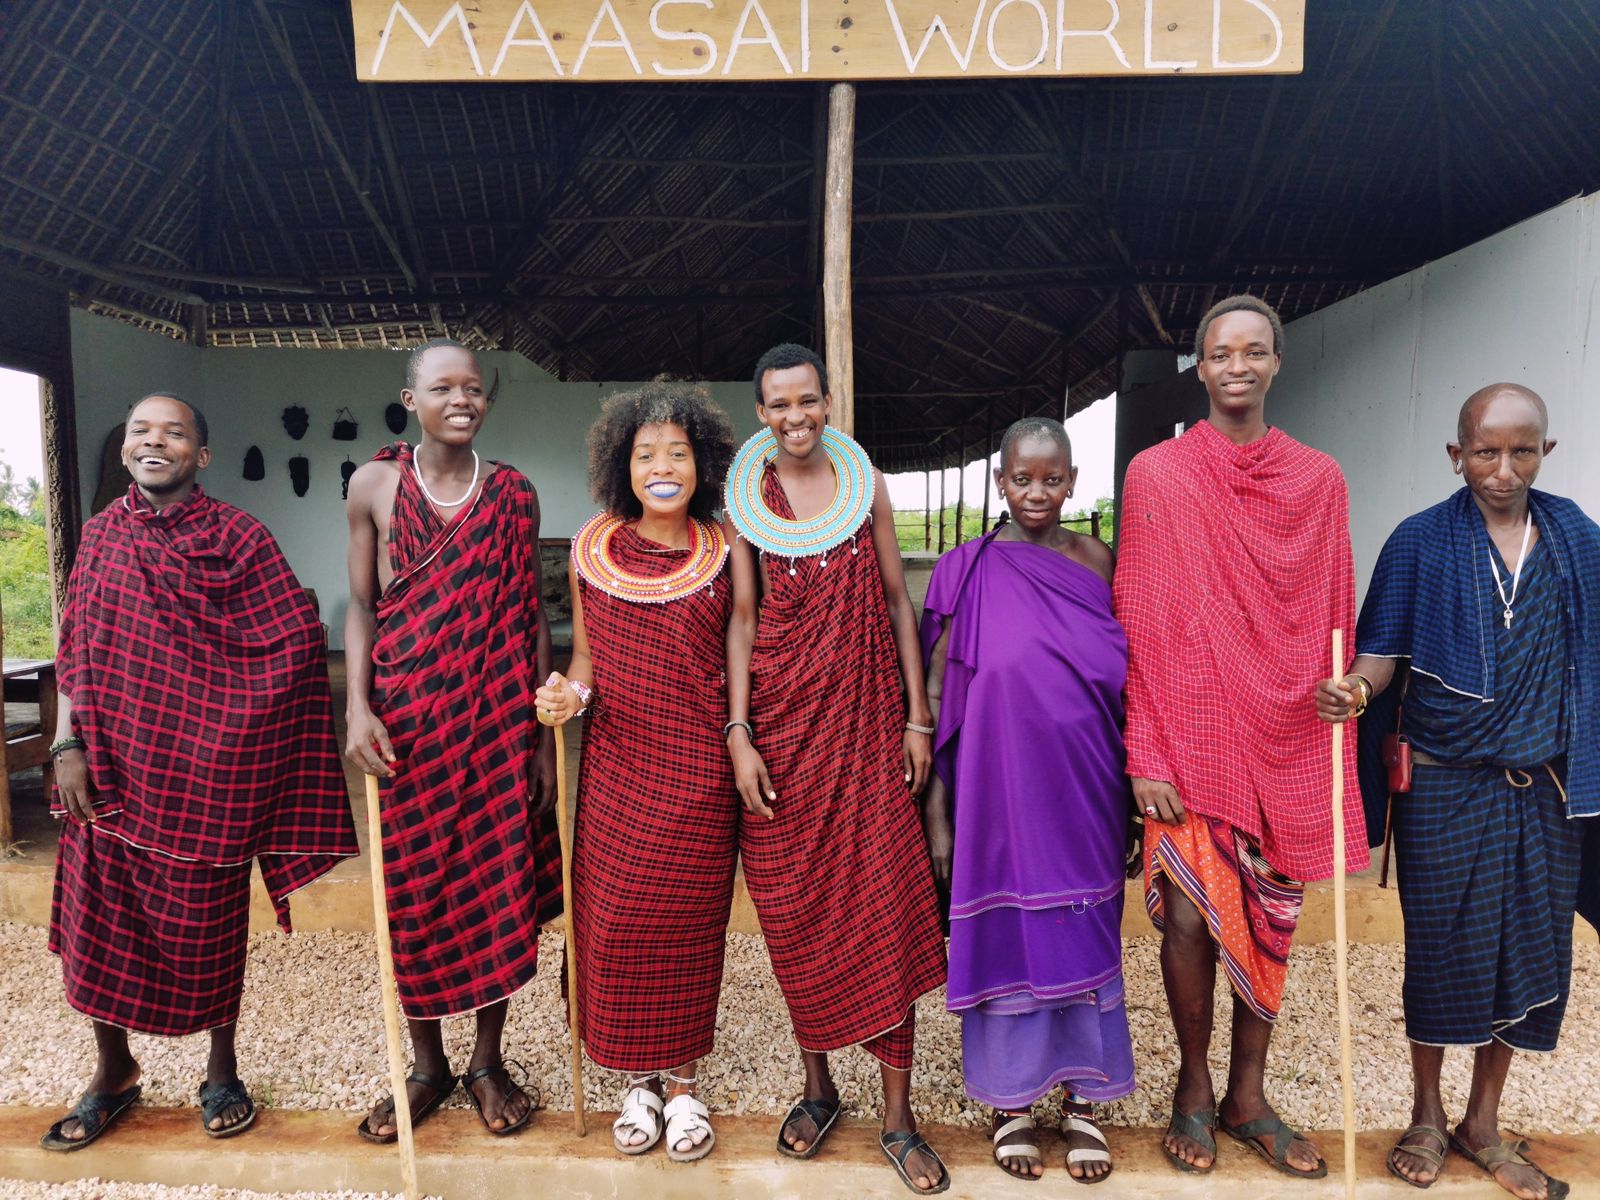 Rebecca Aletheia com os Massai